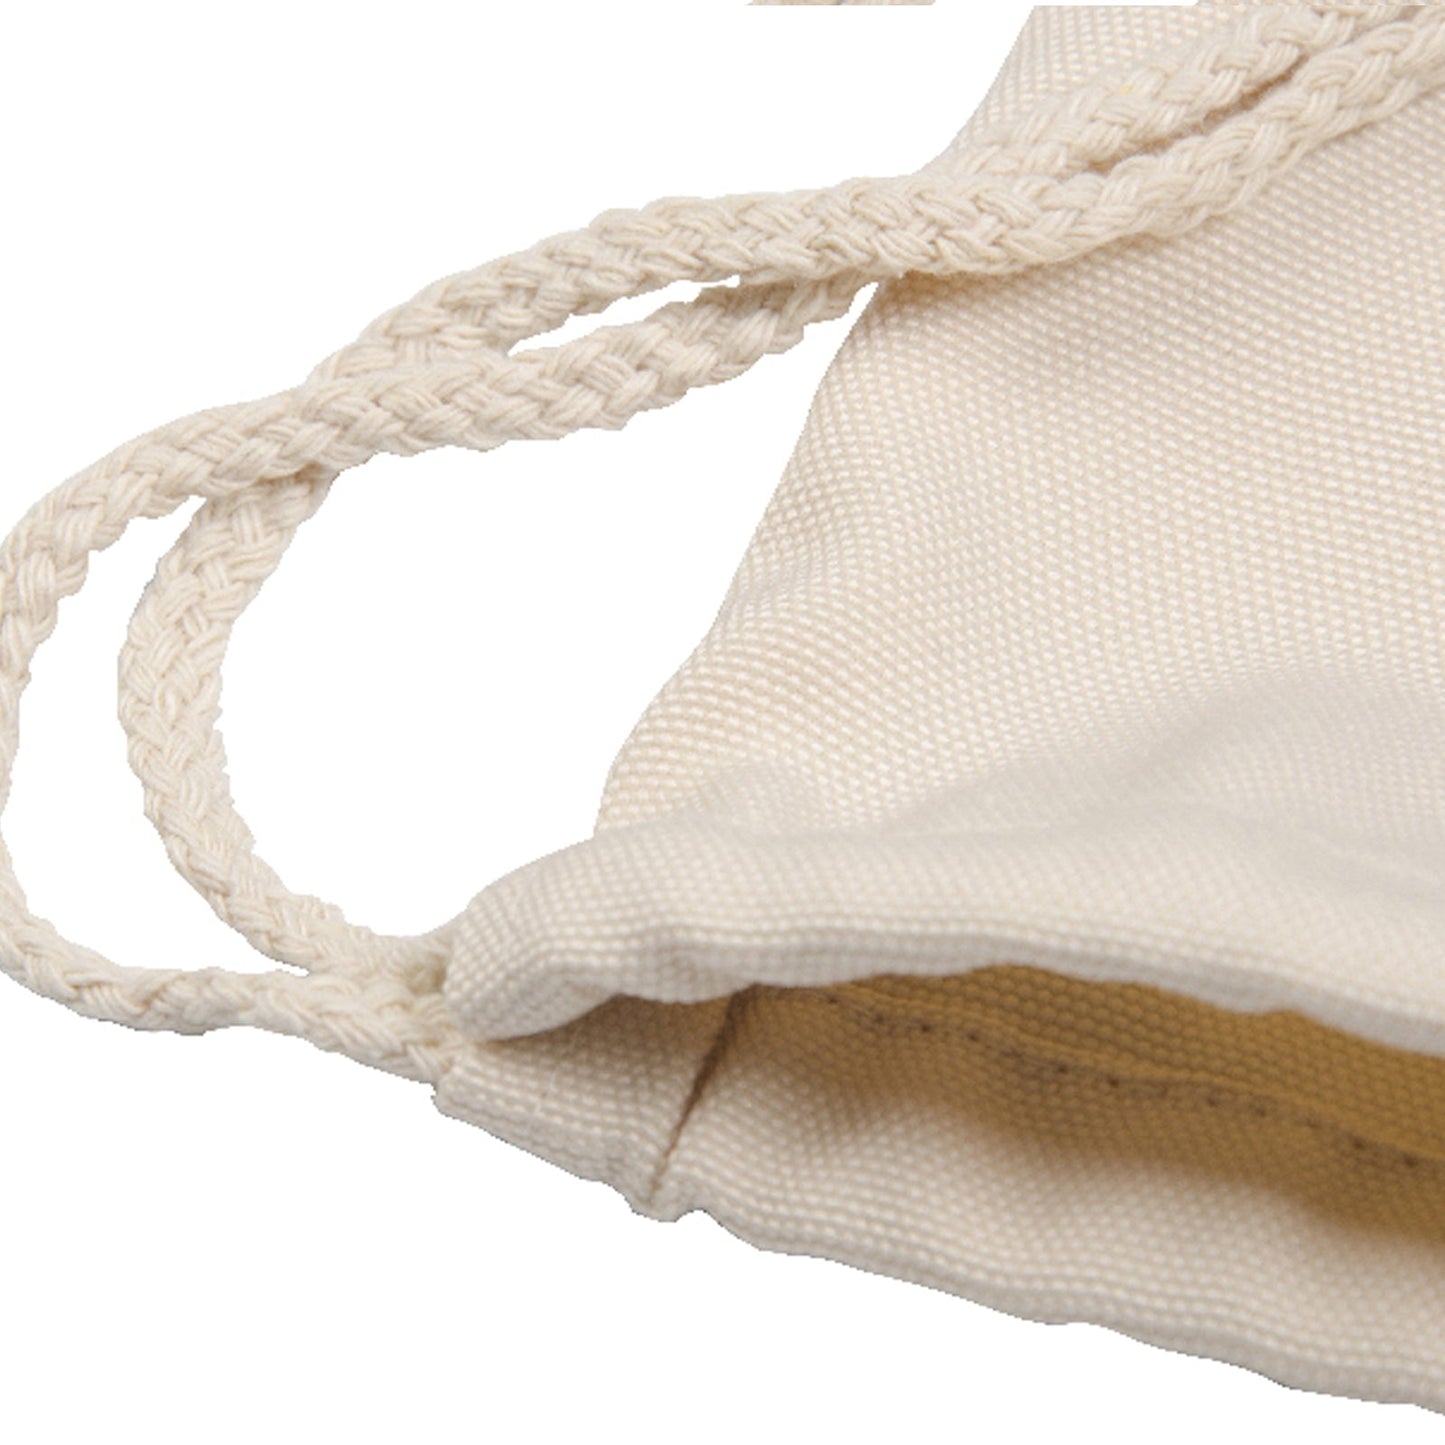 Personalisierter Rucksack mit Kordelzug aus Segeltuch mit Begrüßungstext und umarmenden Nilpferden für Mama und Baby